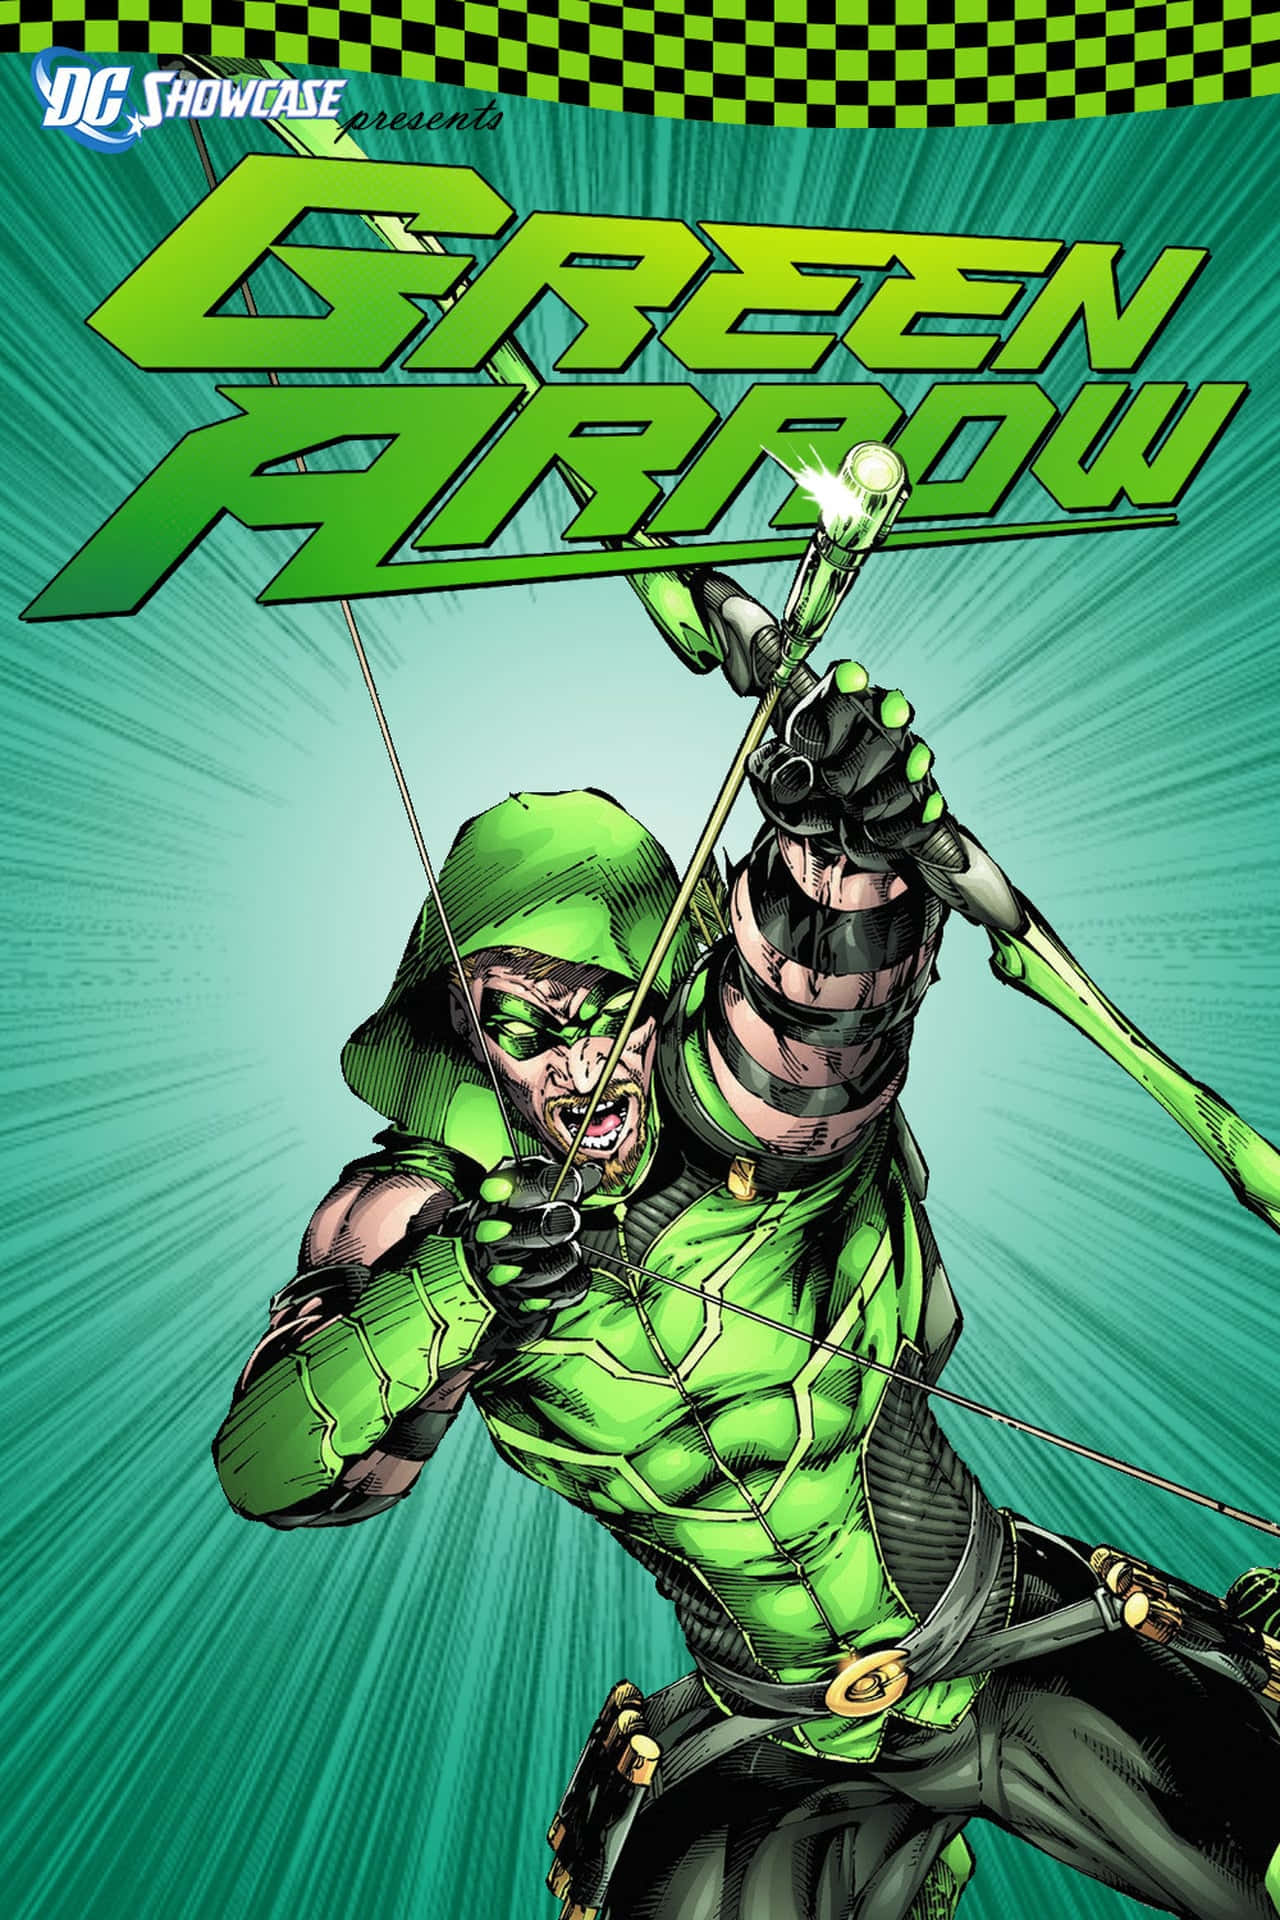 Mostrail Tuo Superpotere Con Il Wallpaper Di Green Arrow Per Iphone. Sfondo